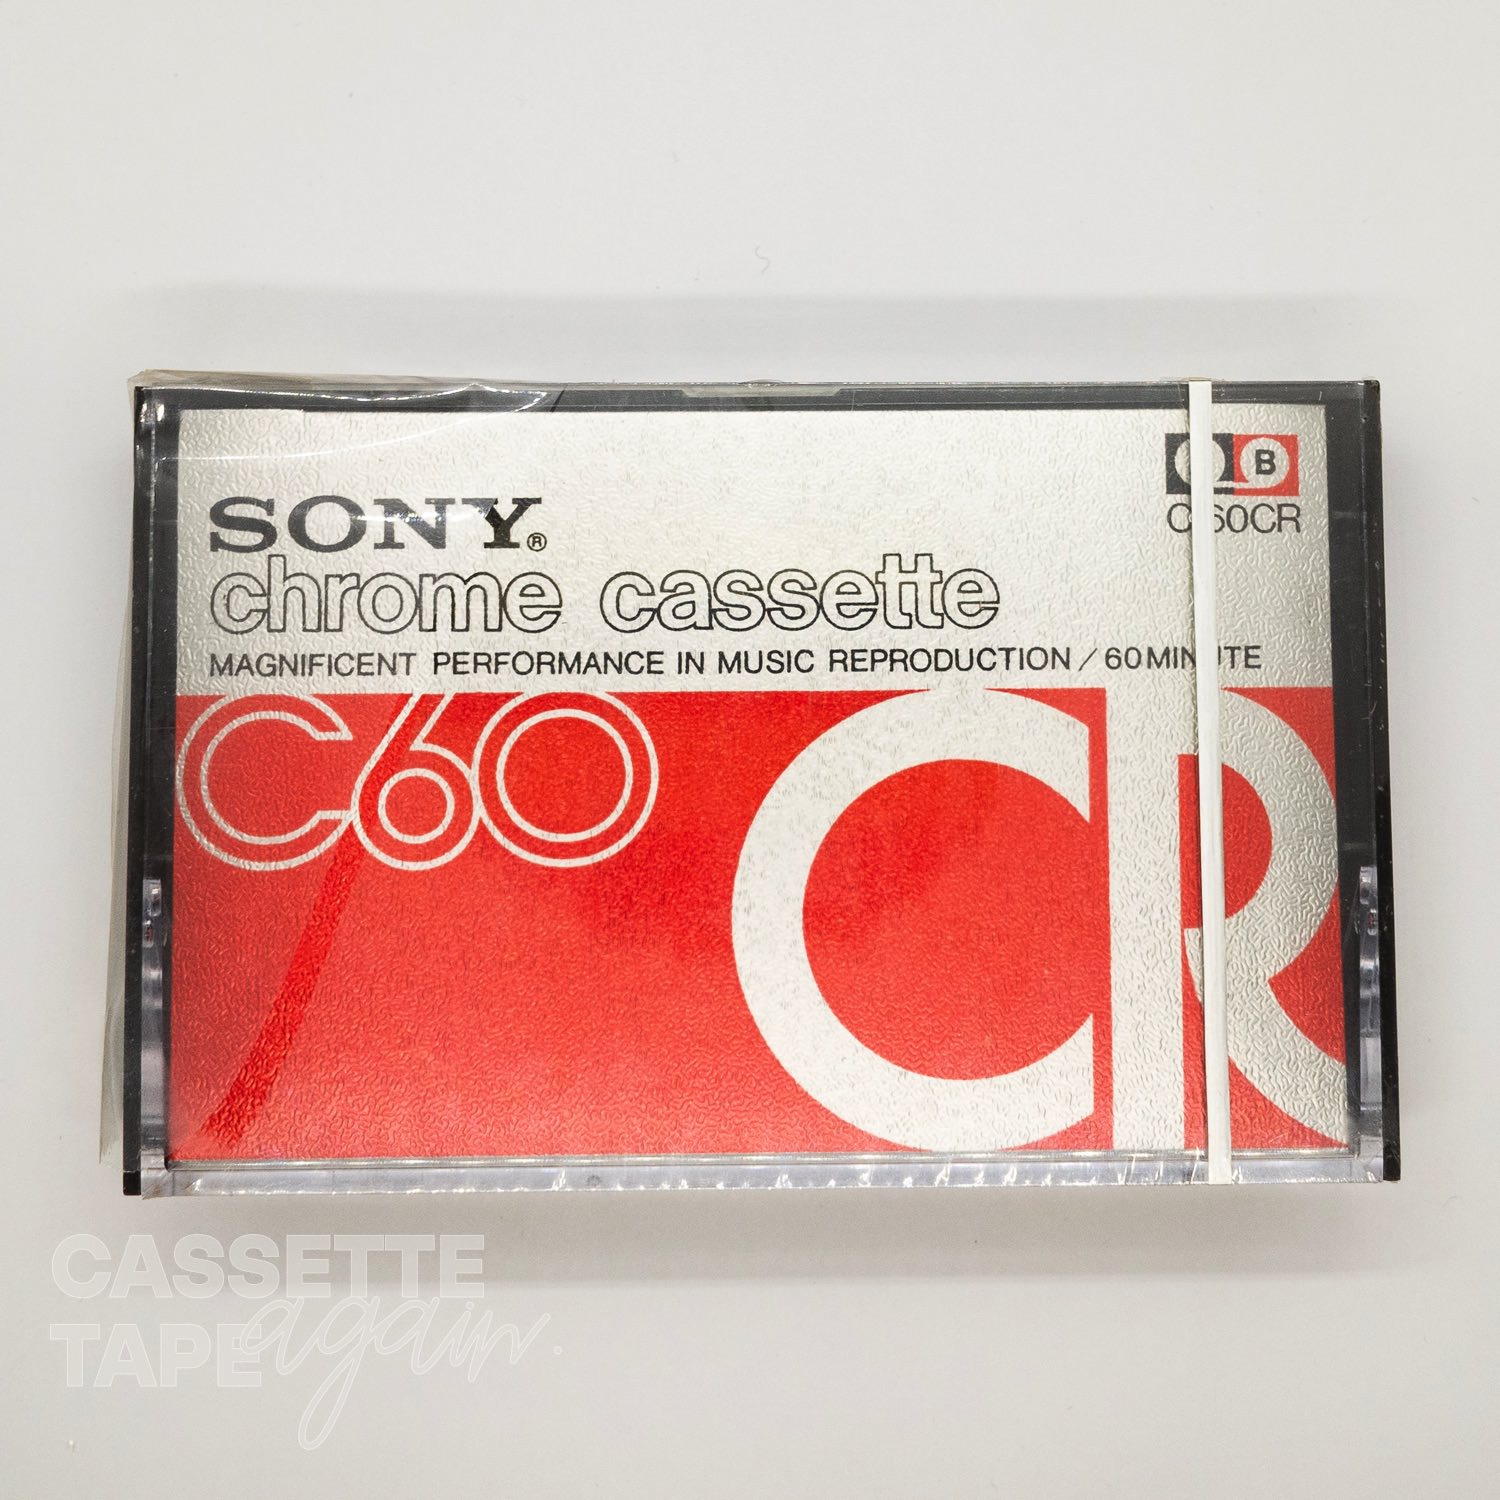 CR 60 / SONY(ハイポジ)